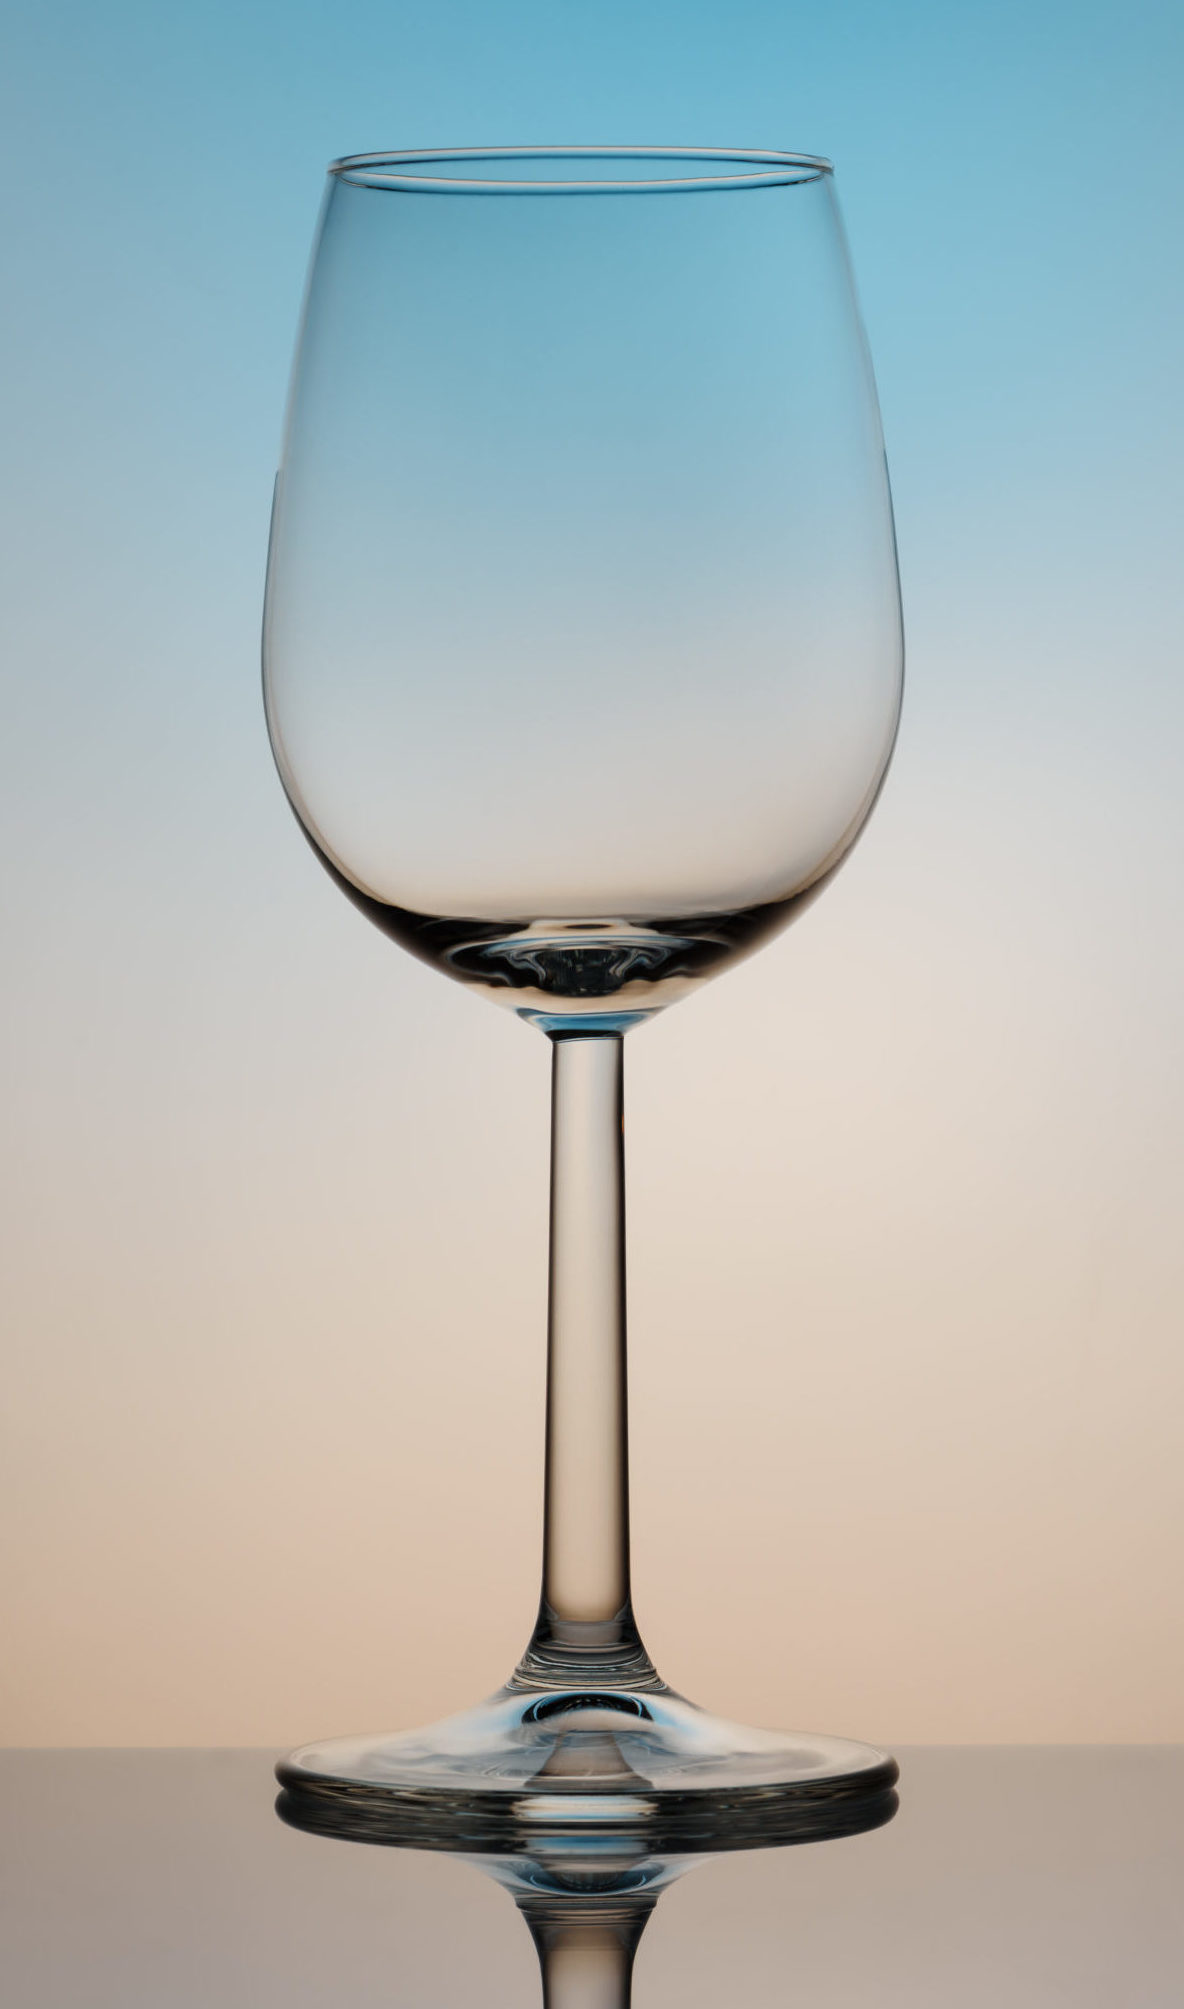 Foto eines sauberen, glänzenden Weinglases vor farbigem Hintergrund